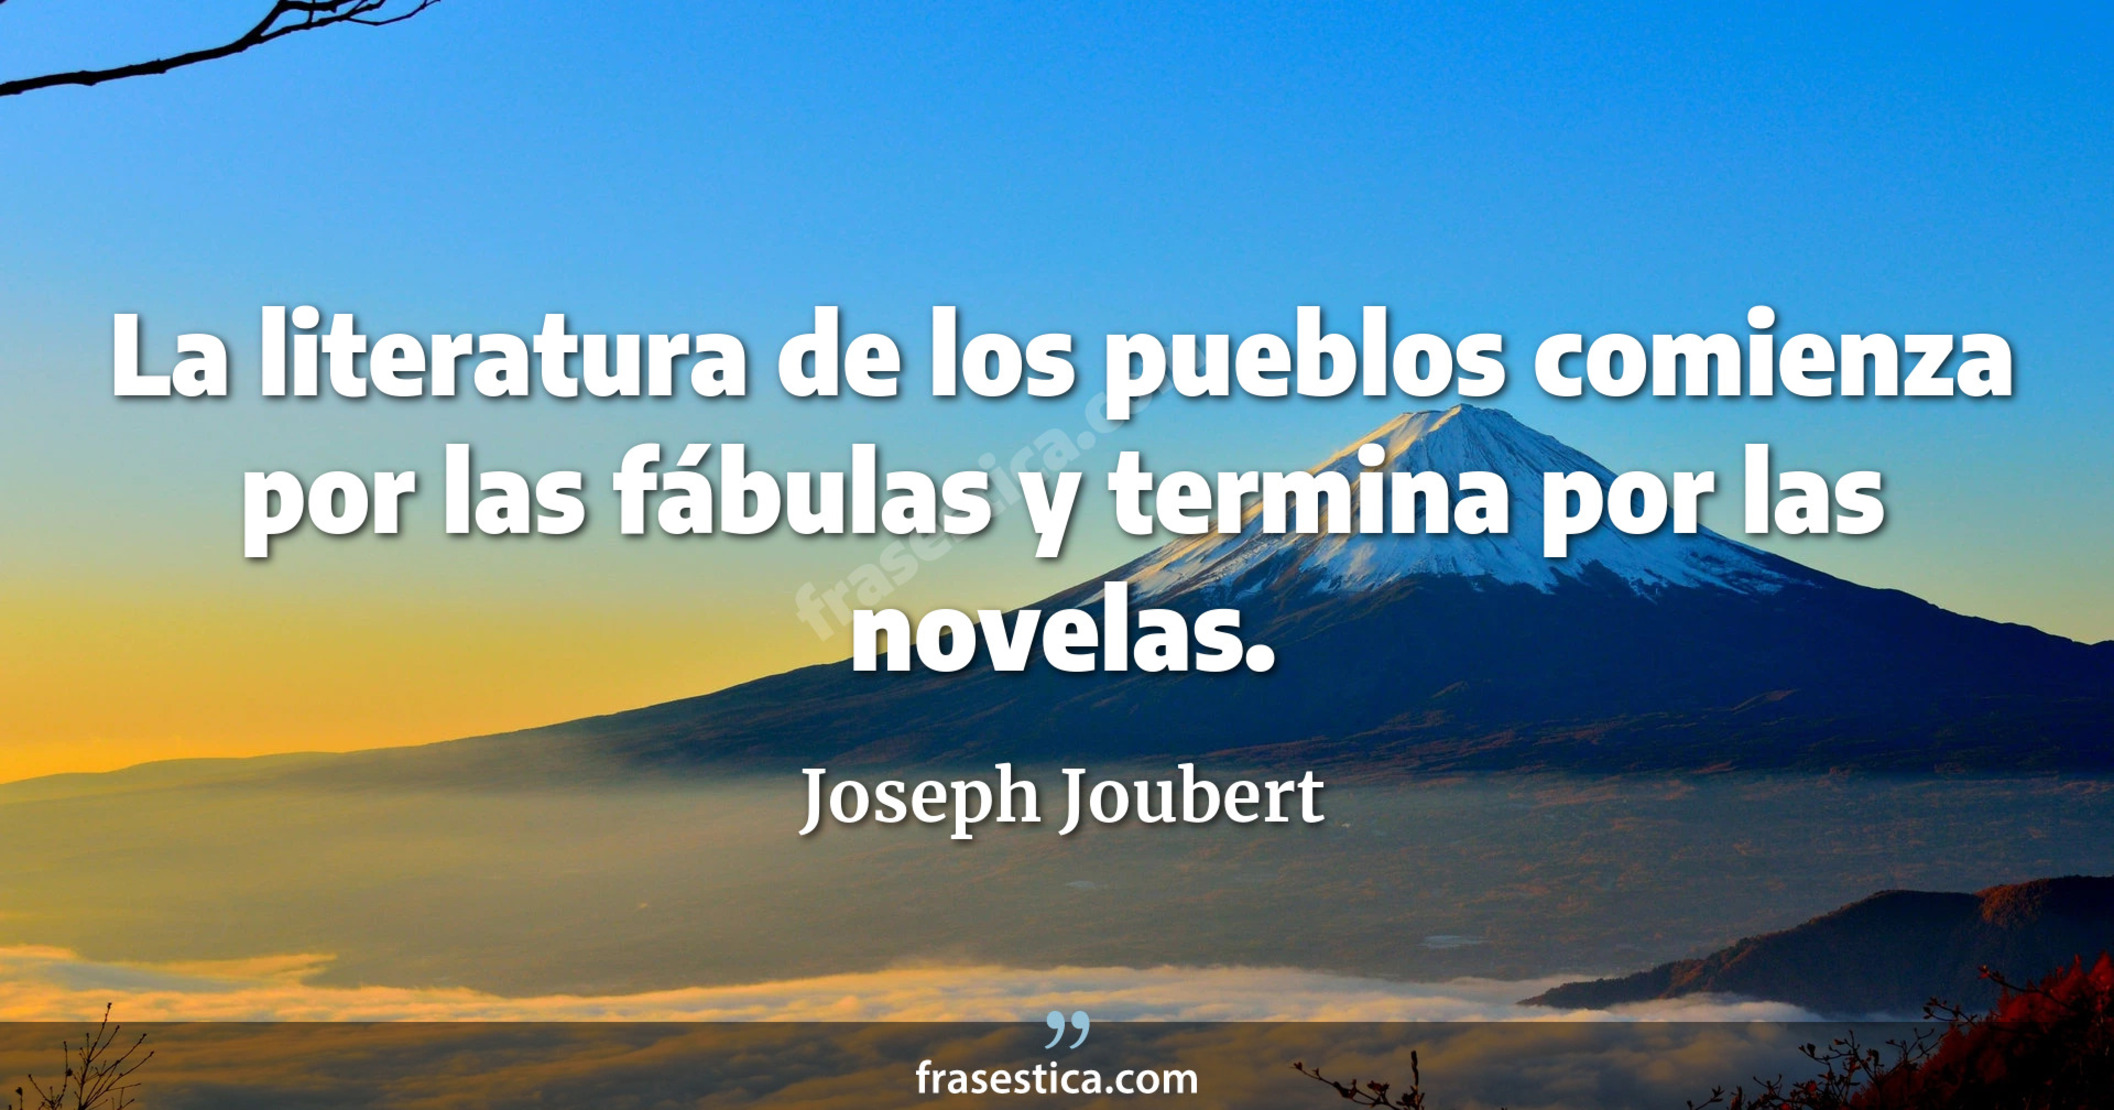 La literatura de los pueblos comienza por las fábulas y termina por las novelas. - Joseph Joubert